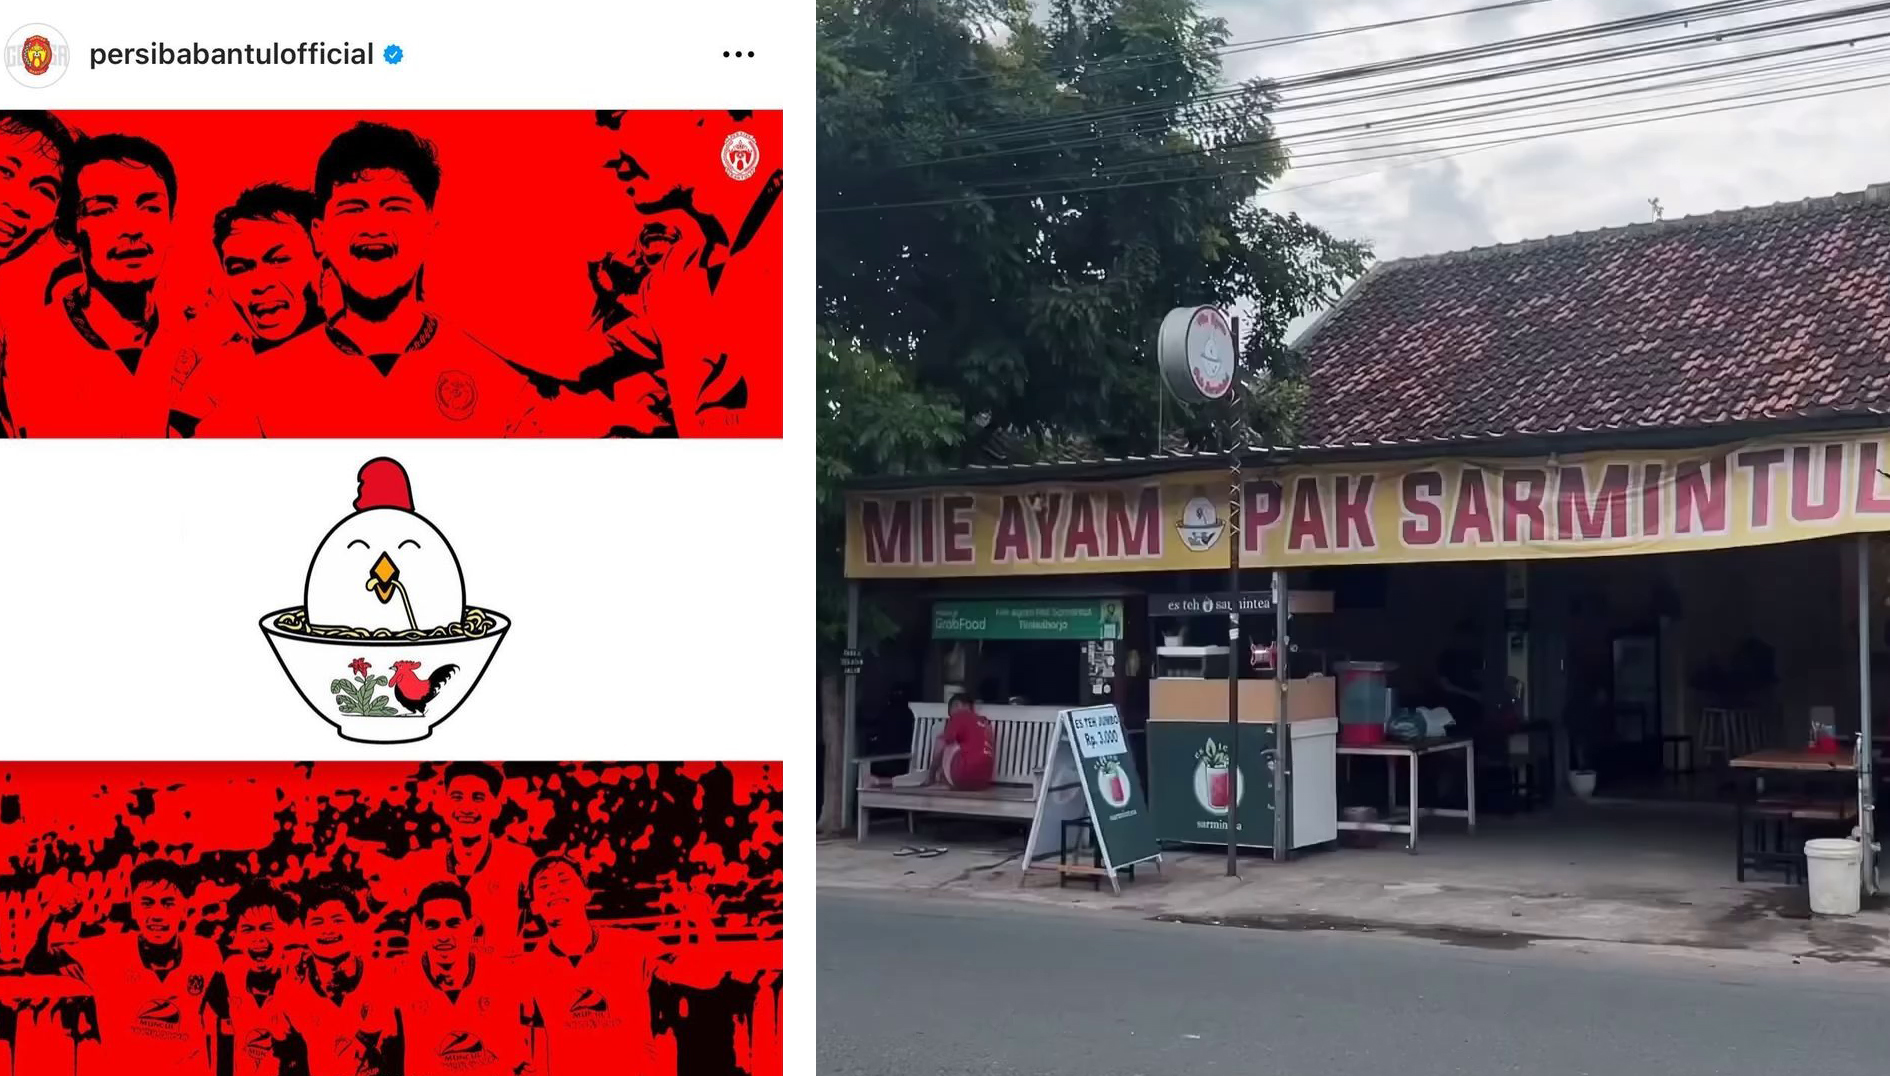 Sejarah! Warung Mie Ayam jadi Sponsor Utama Klub Liga Indonesia